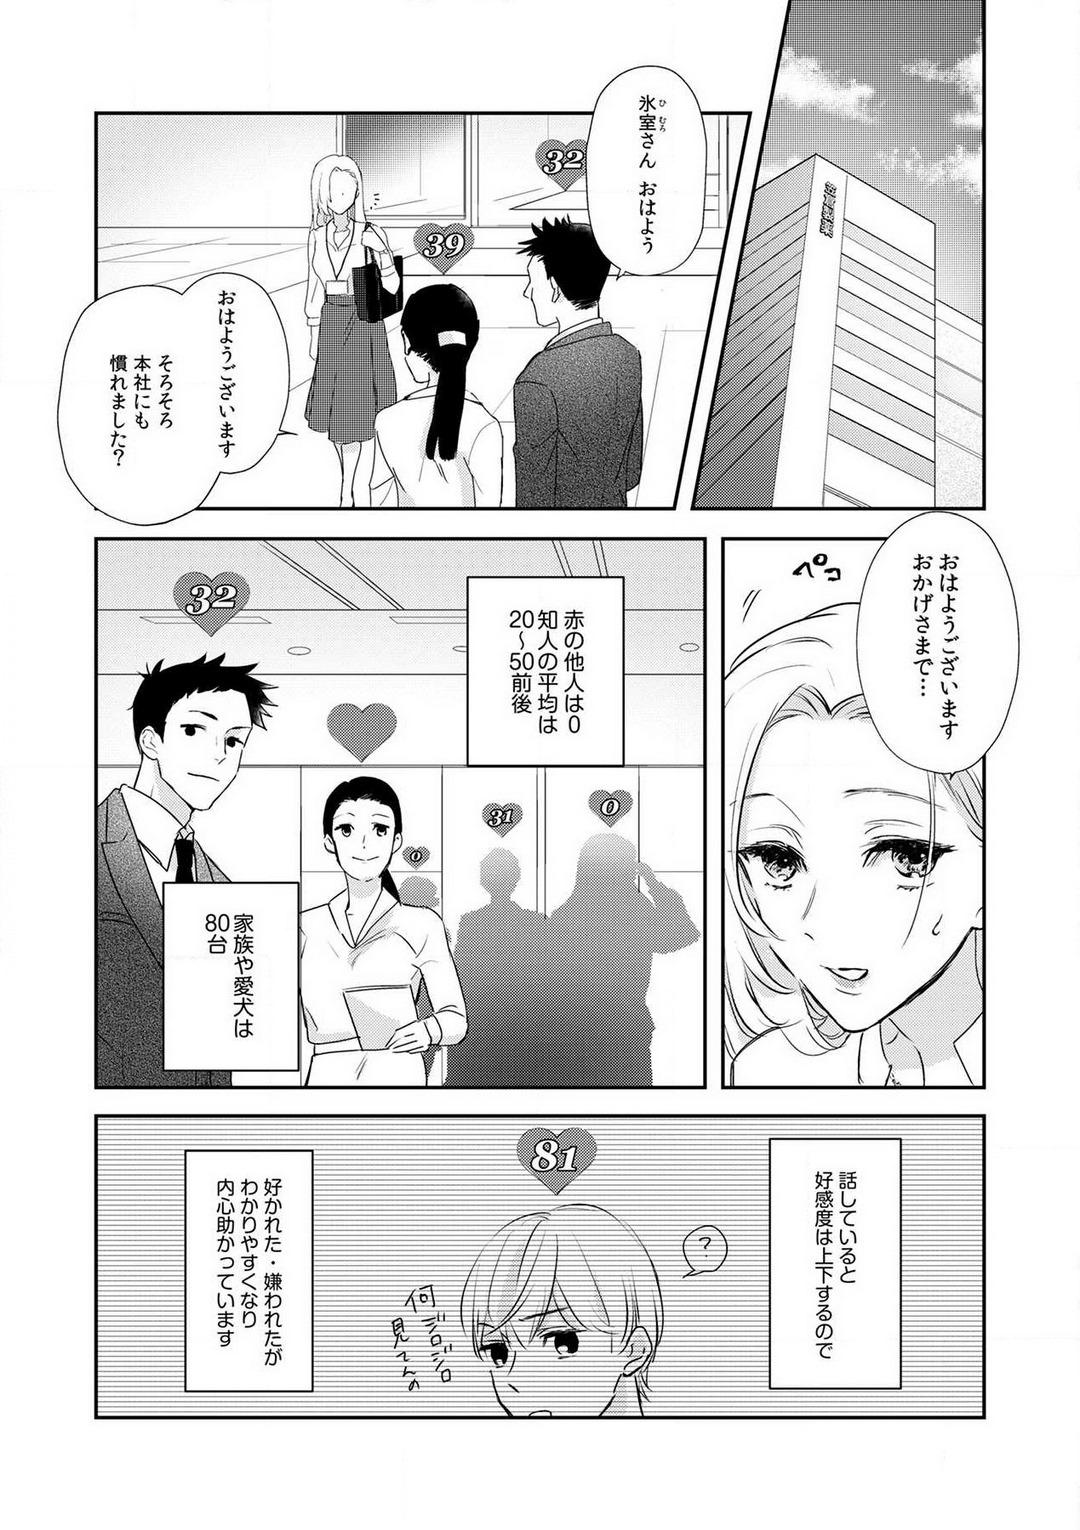 Dom [Ichinokiyo Nanno] Taiikukaikei Osananajimi wa Sekaiichi no Dekiaidanshi 〜 Zen Jinrui no Kōkan-do ga Aru hi Mieta Rikejo no Watashi~Chp.1-2 Female Domination - Page 6